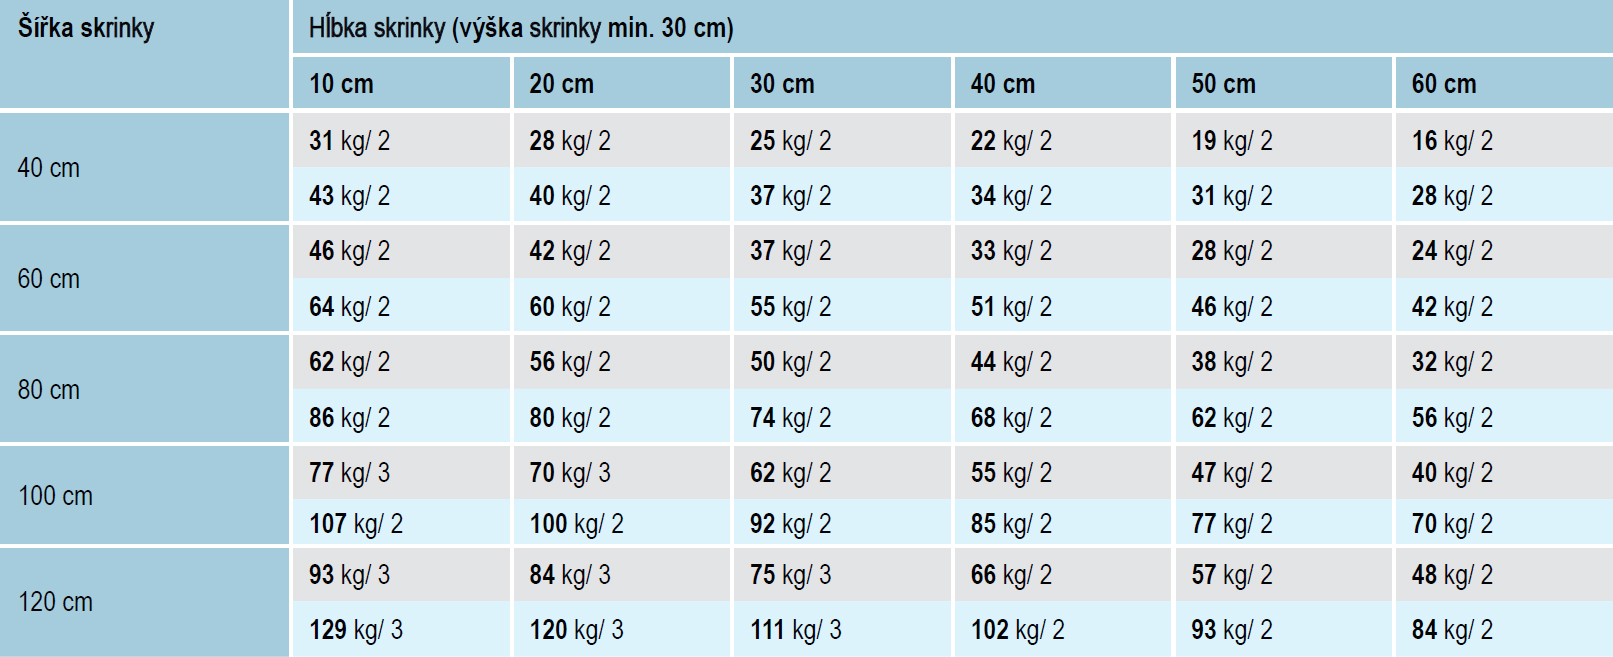 Maximálna prípustná hmotnosť skrinky v kg a minimálny počet hmoždiniek